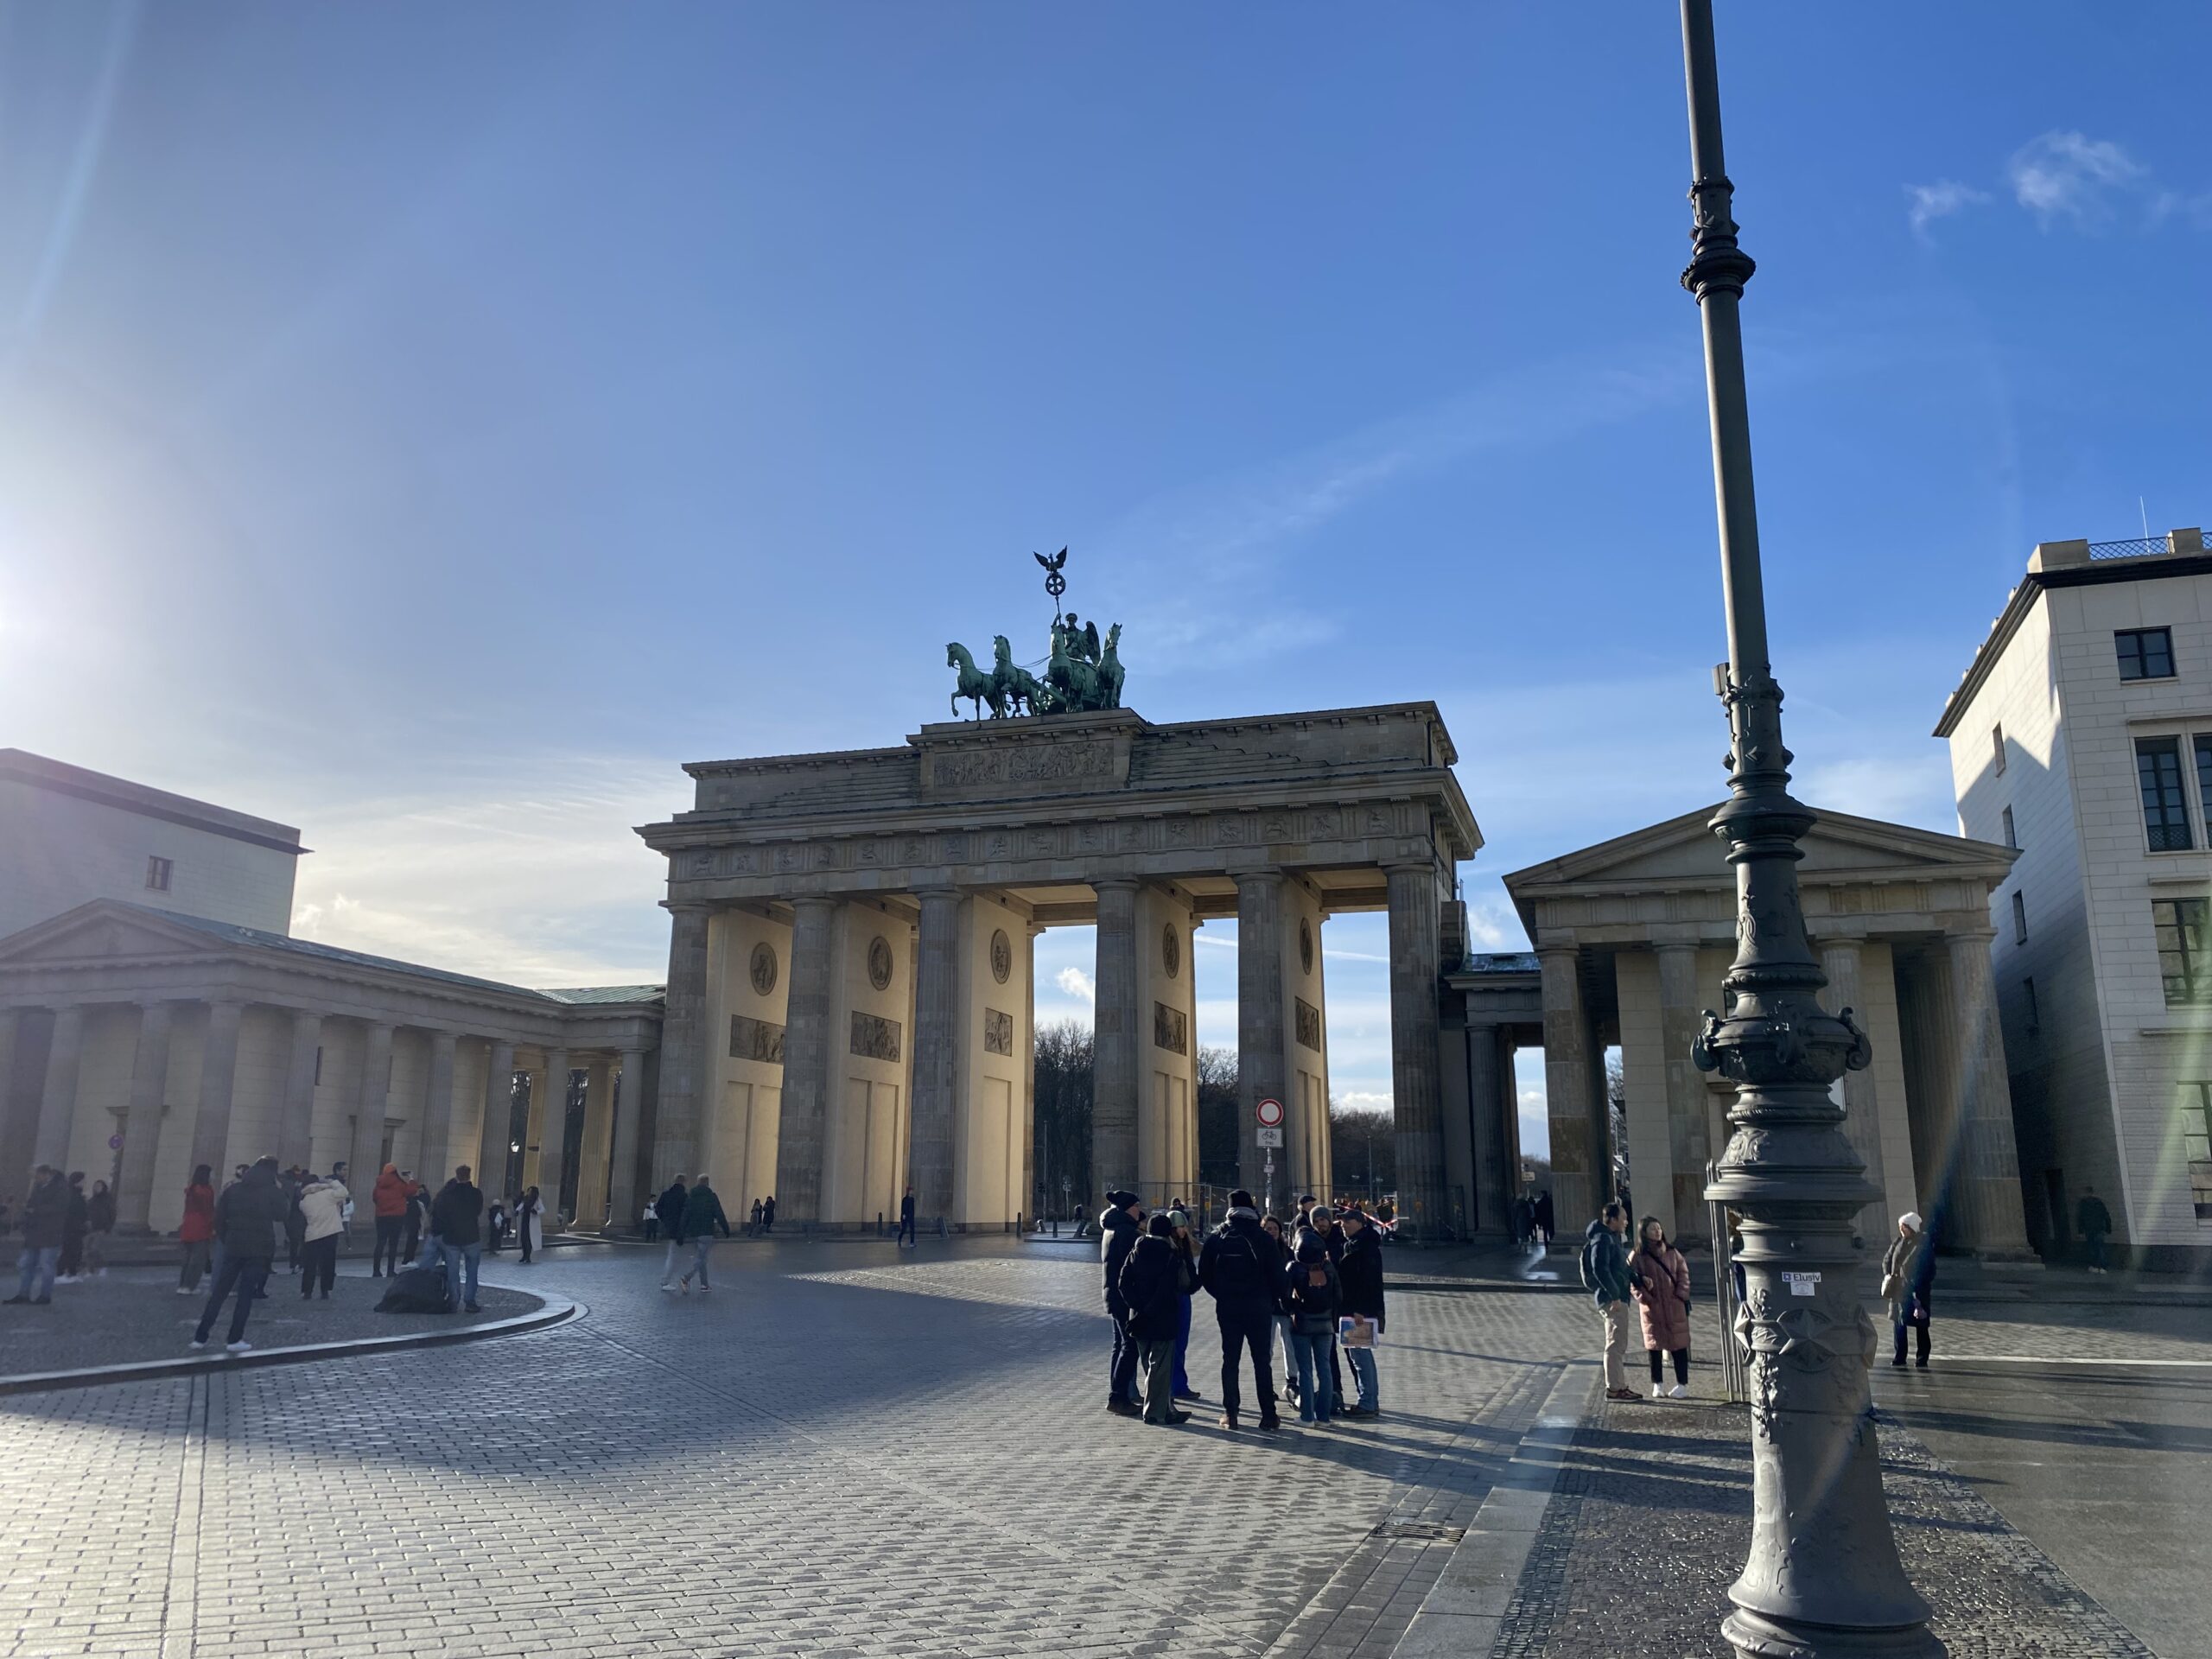 Popular Attractions: Berlin Walking Tour